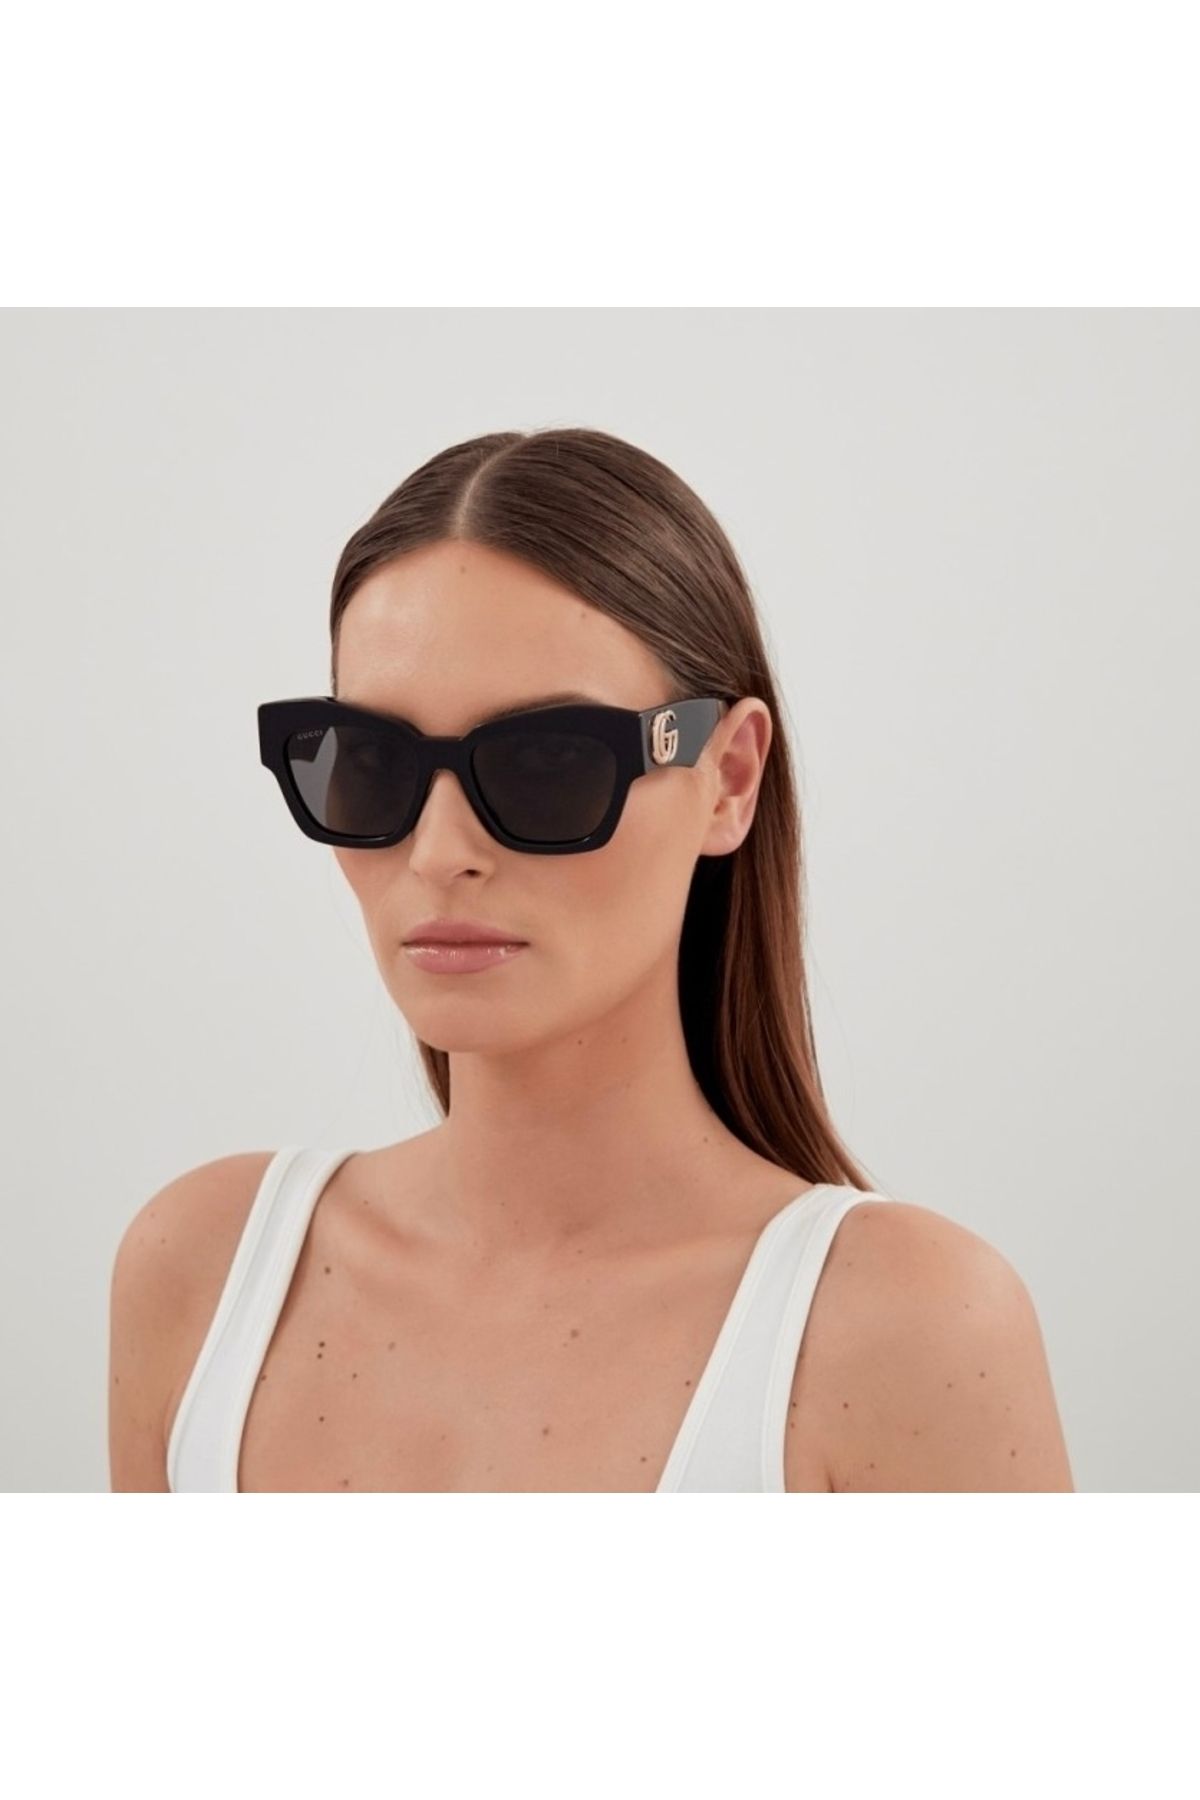 Gucci GG1422S001 Kadın Güneş Gözlüğü  Siyah Kemik Çerçeve Füme Lens UV400